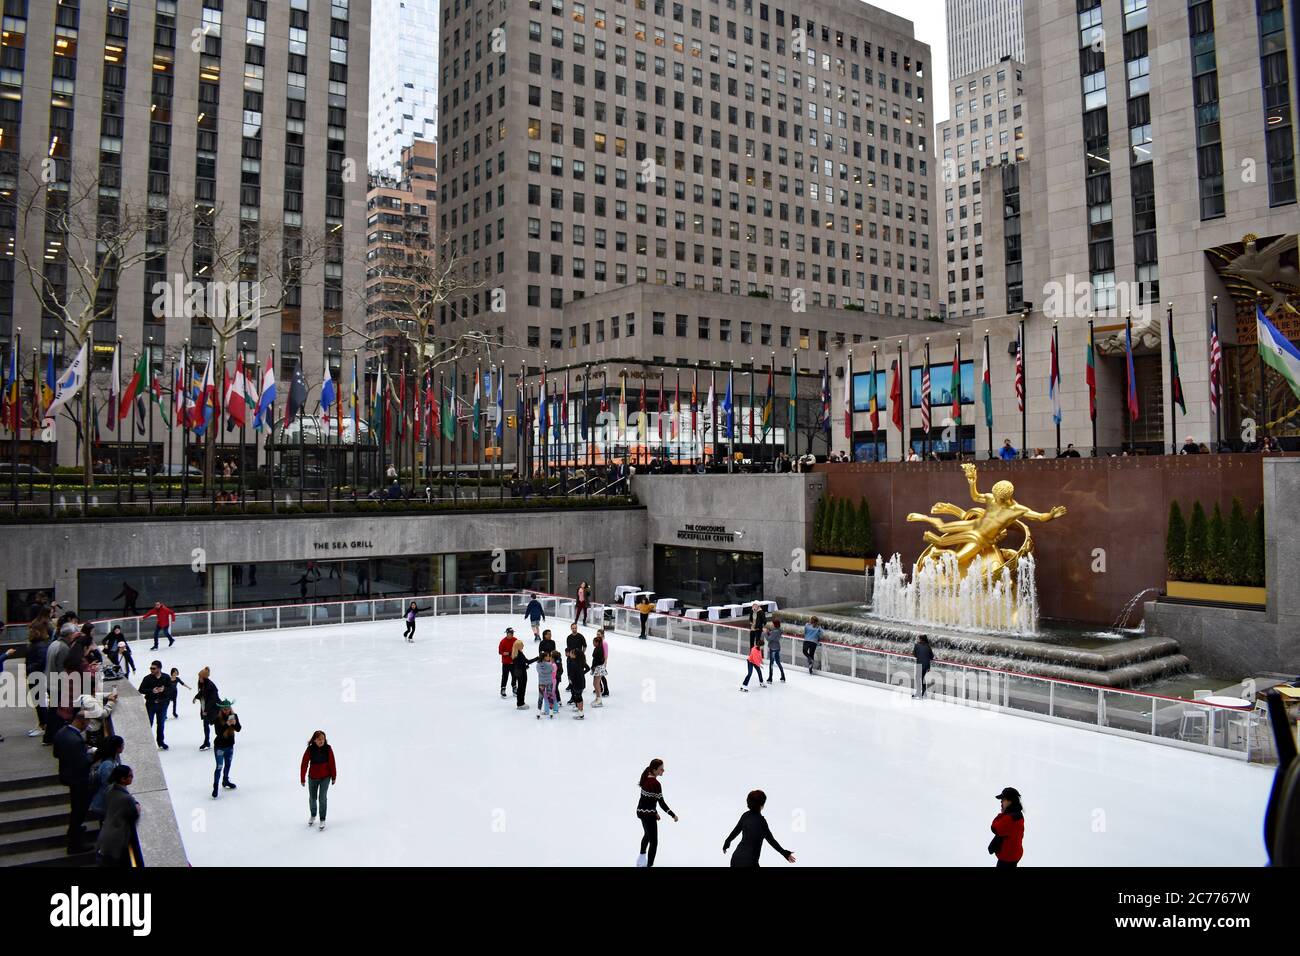 Persone che pattinano sulla pista di pattinaggio nel Rockefeller Center. La statua dorata del Prometheus è vista così come le bandiere che costeggiano la parte superiore intorno alla pista. Foto Stock